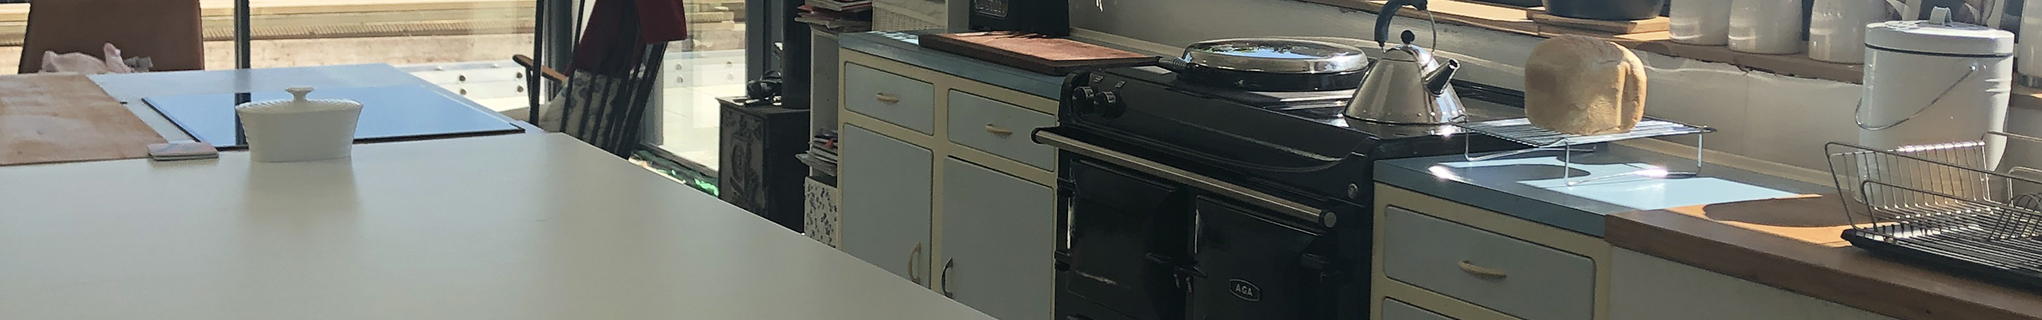 Linda Clayton kitchen with black eR3 Series 100 